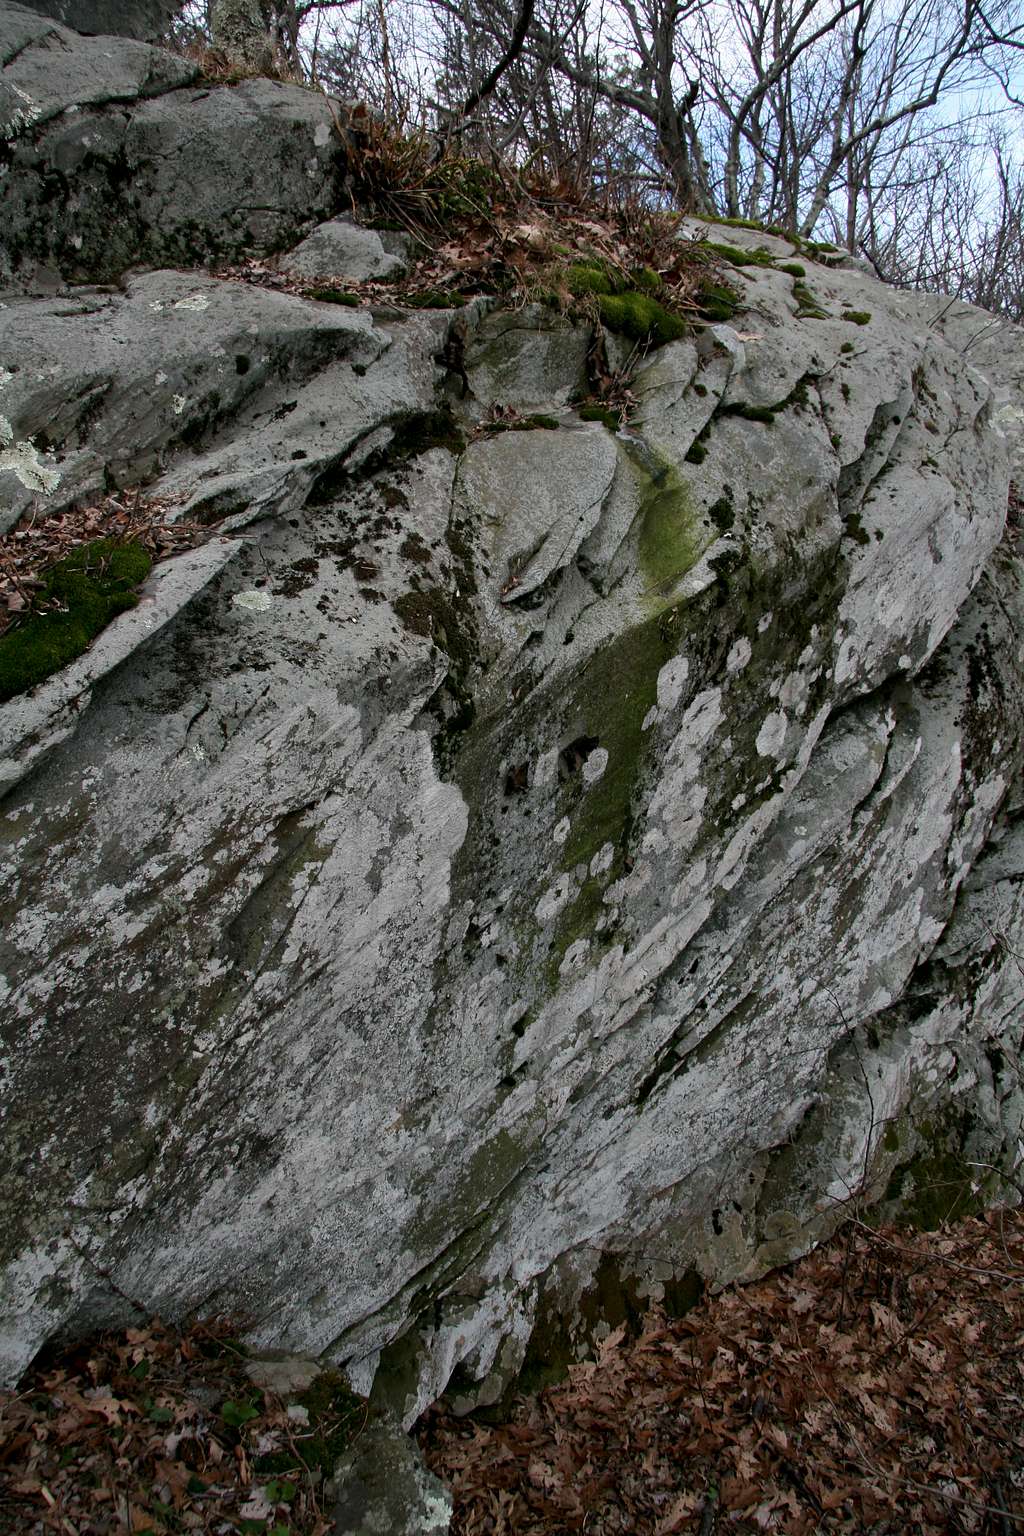 Summit Rocks